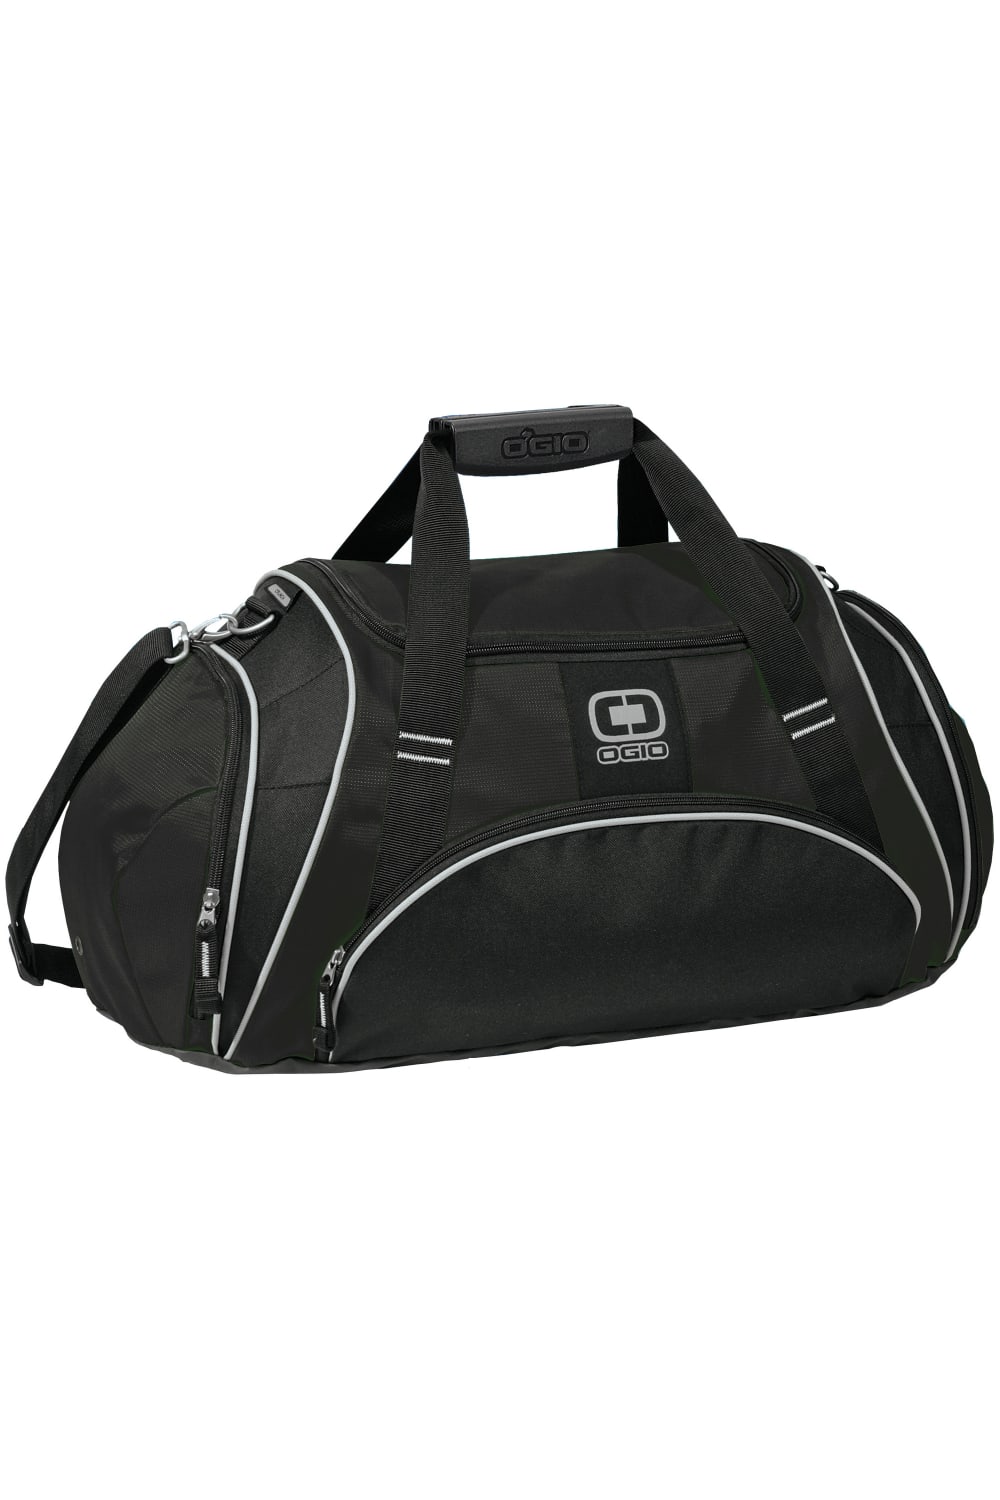 Ogio Crunch Sports / Gym Duffel Bag (Black) (One Size)